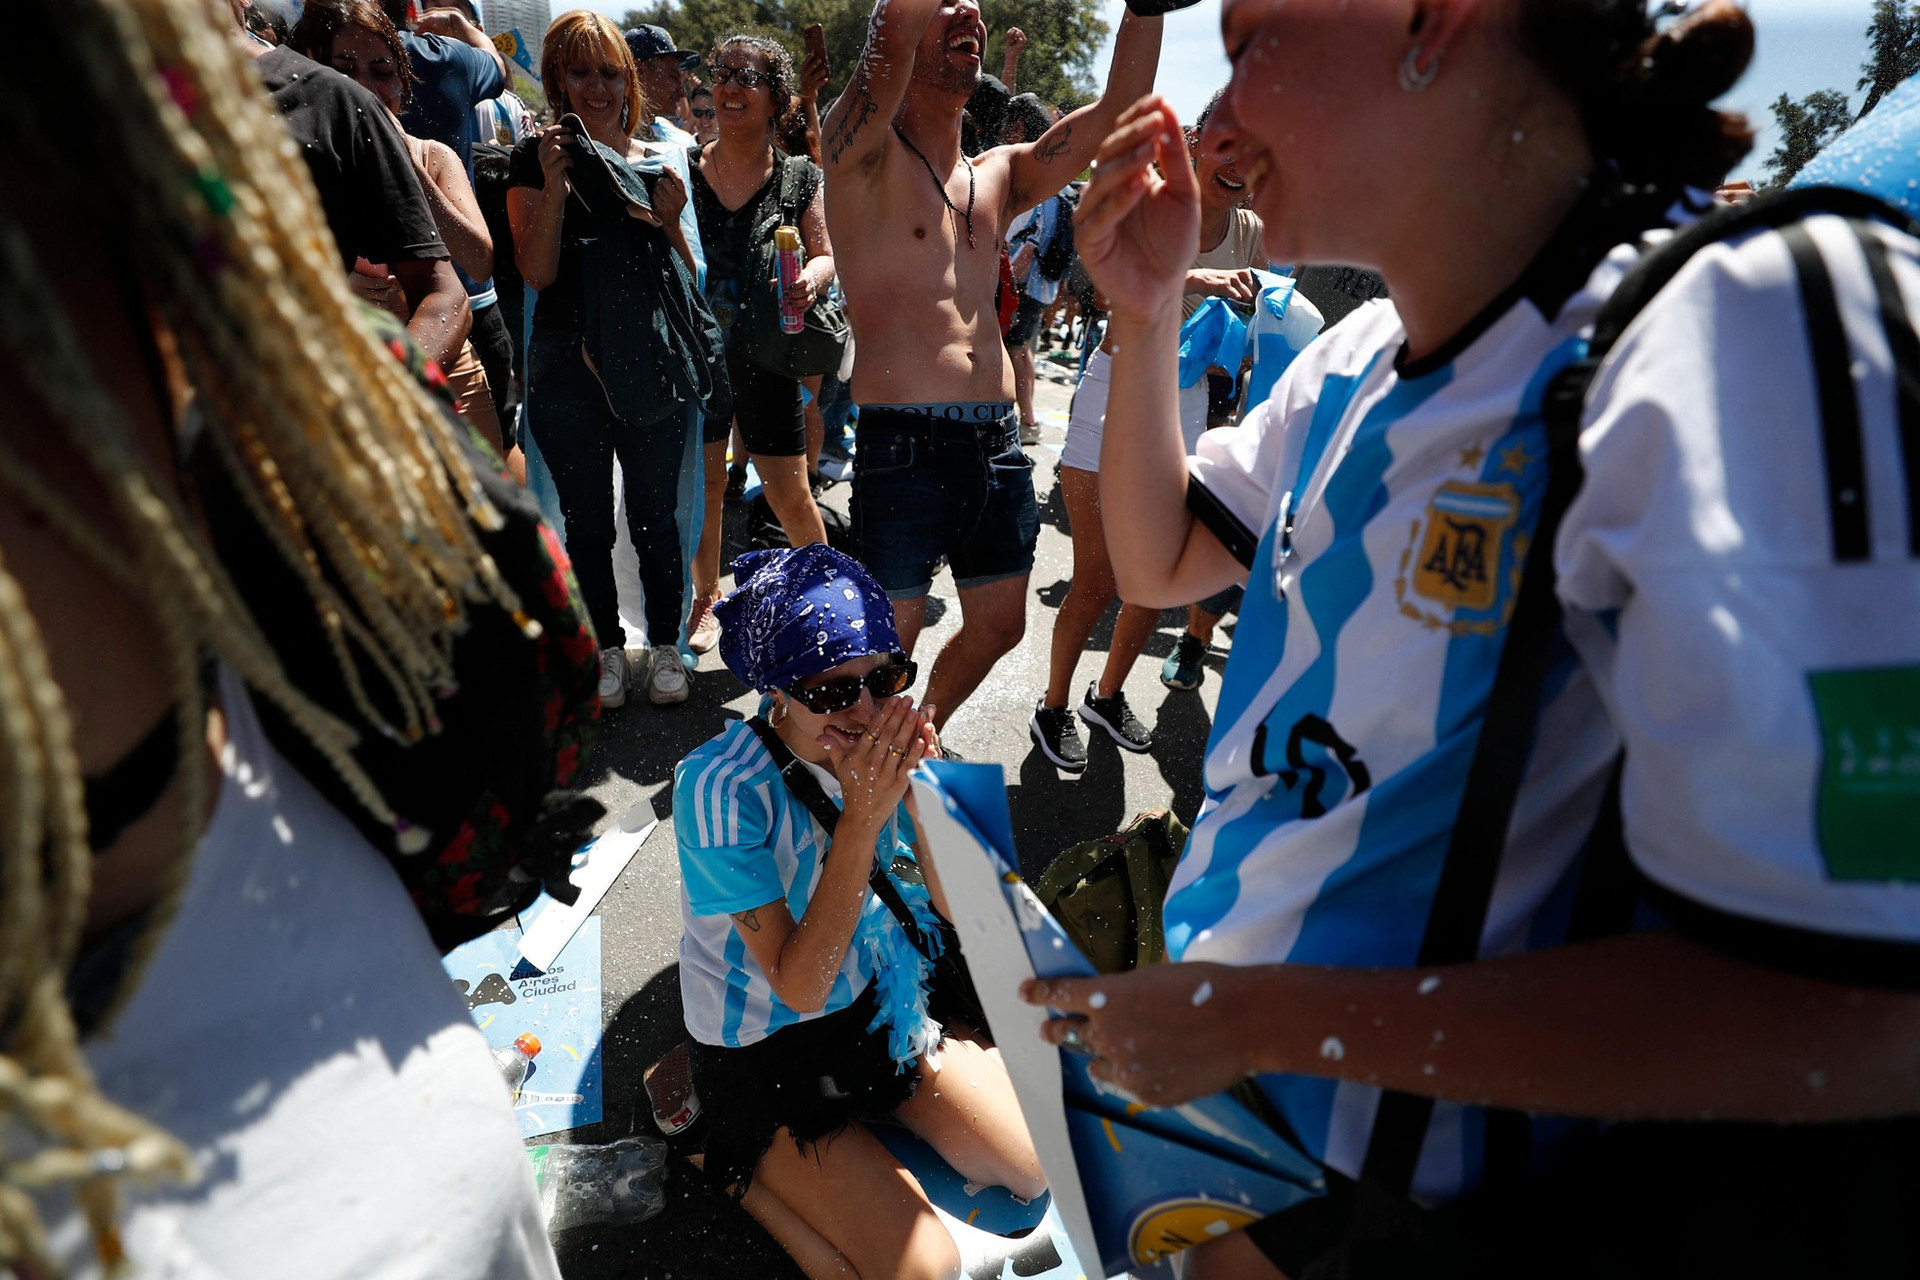 Thủ đô Argentina chìm trong mưa nước mắt vì hạnh phúc ảnh 4